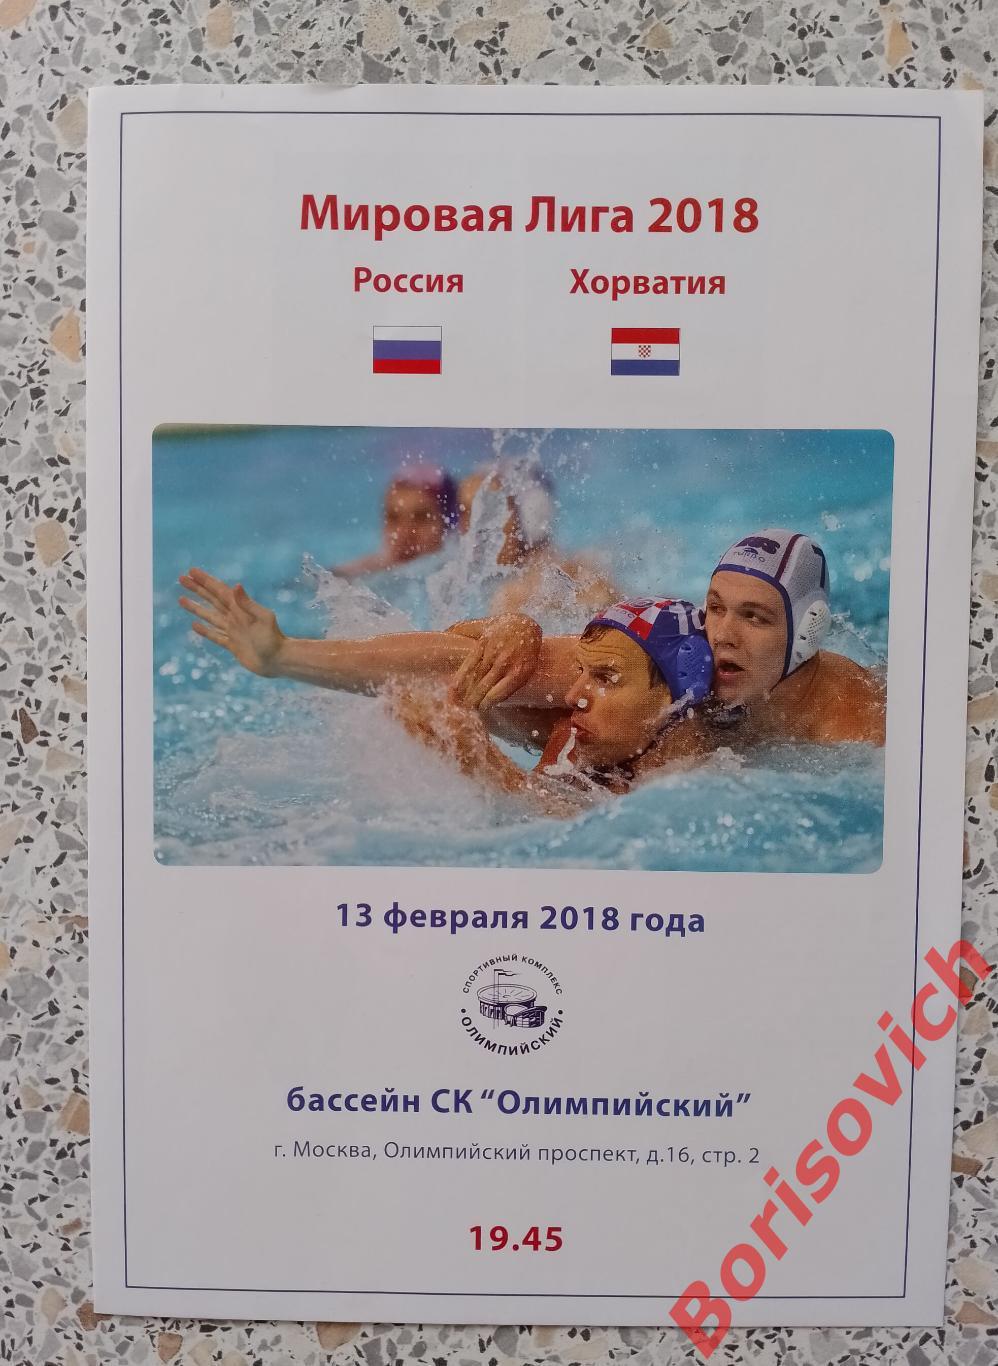 Водное поло Россия - Хорватия 13-02-2018 Мировая лига 2018.15